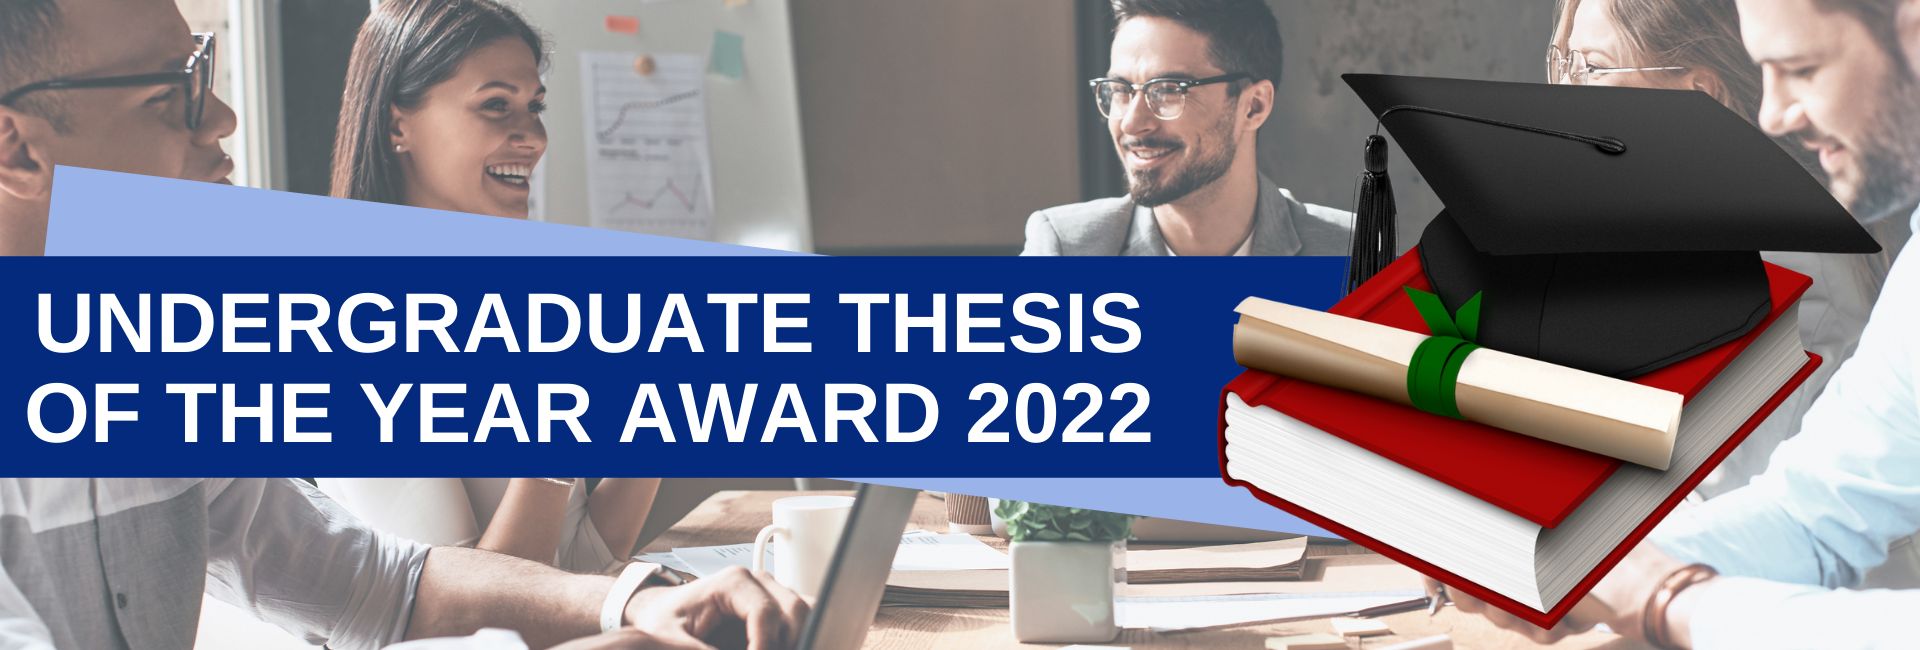 thesis ideas 2022